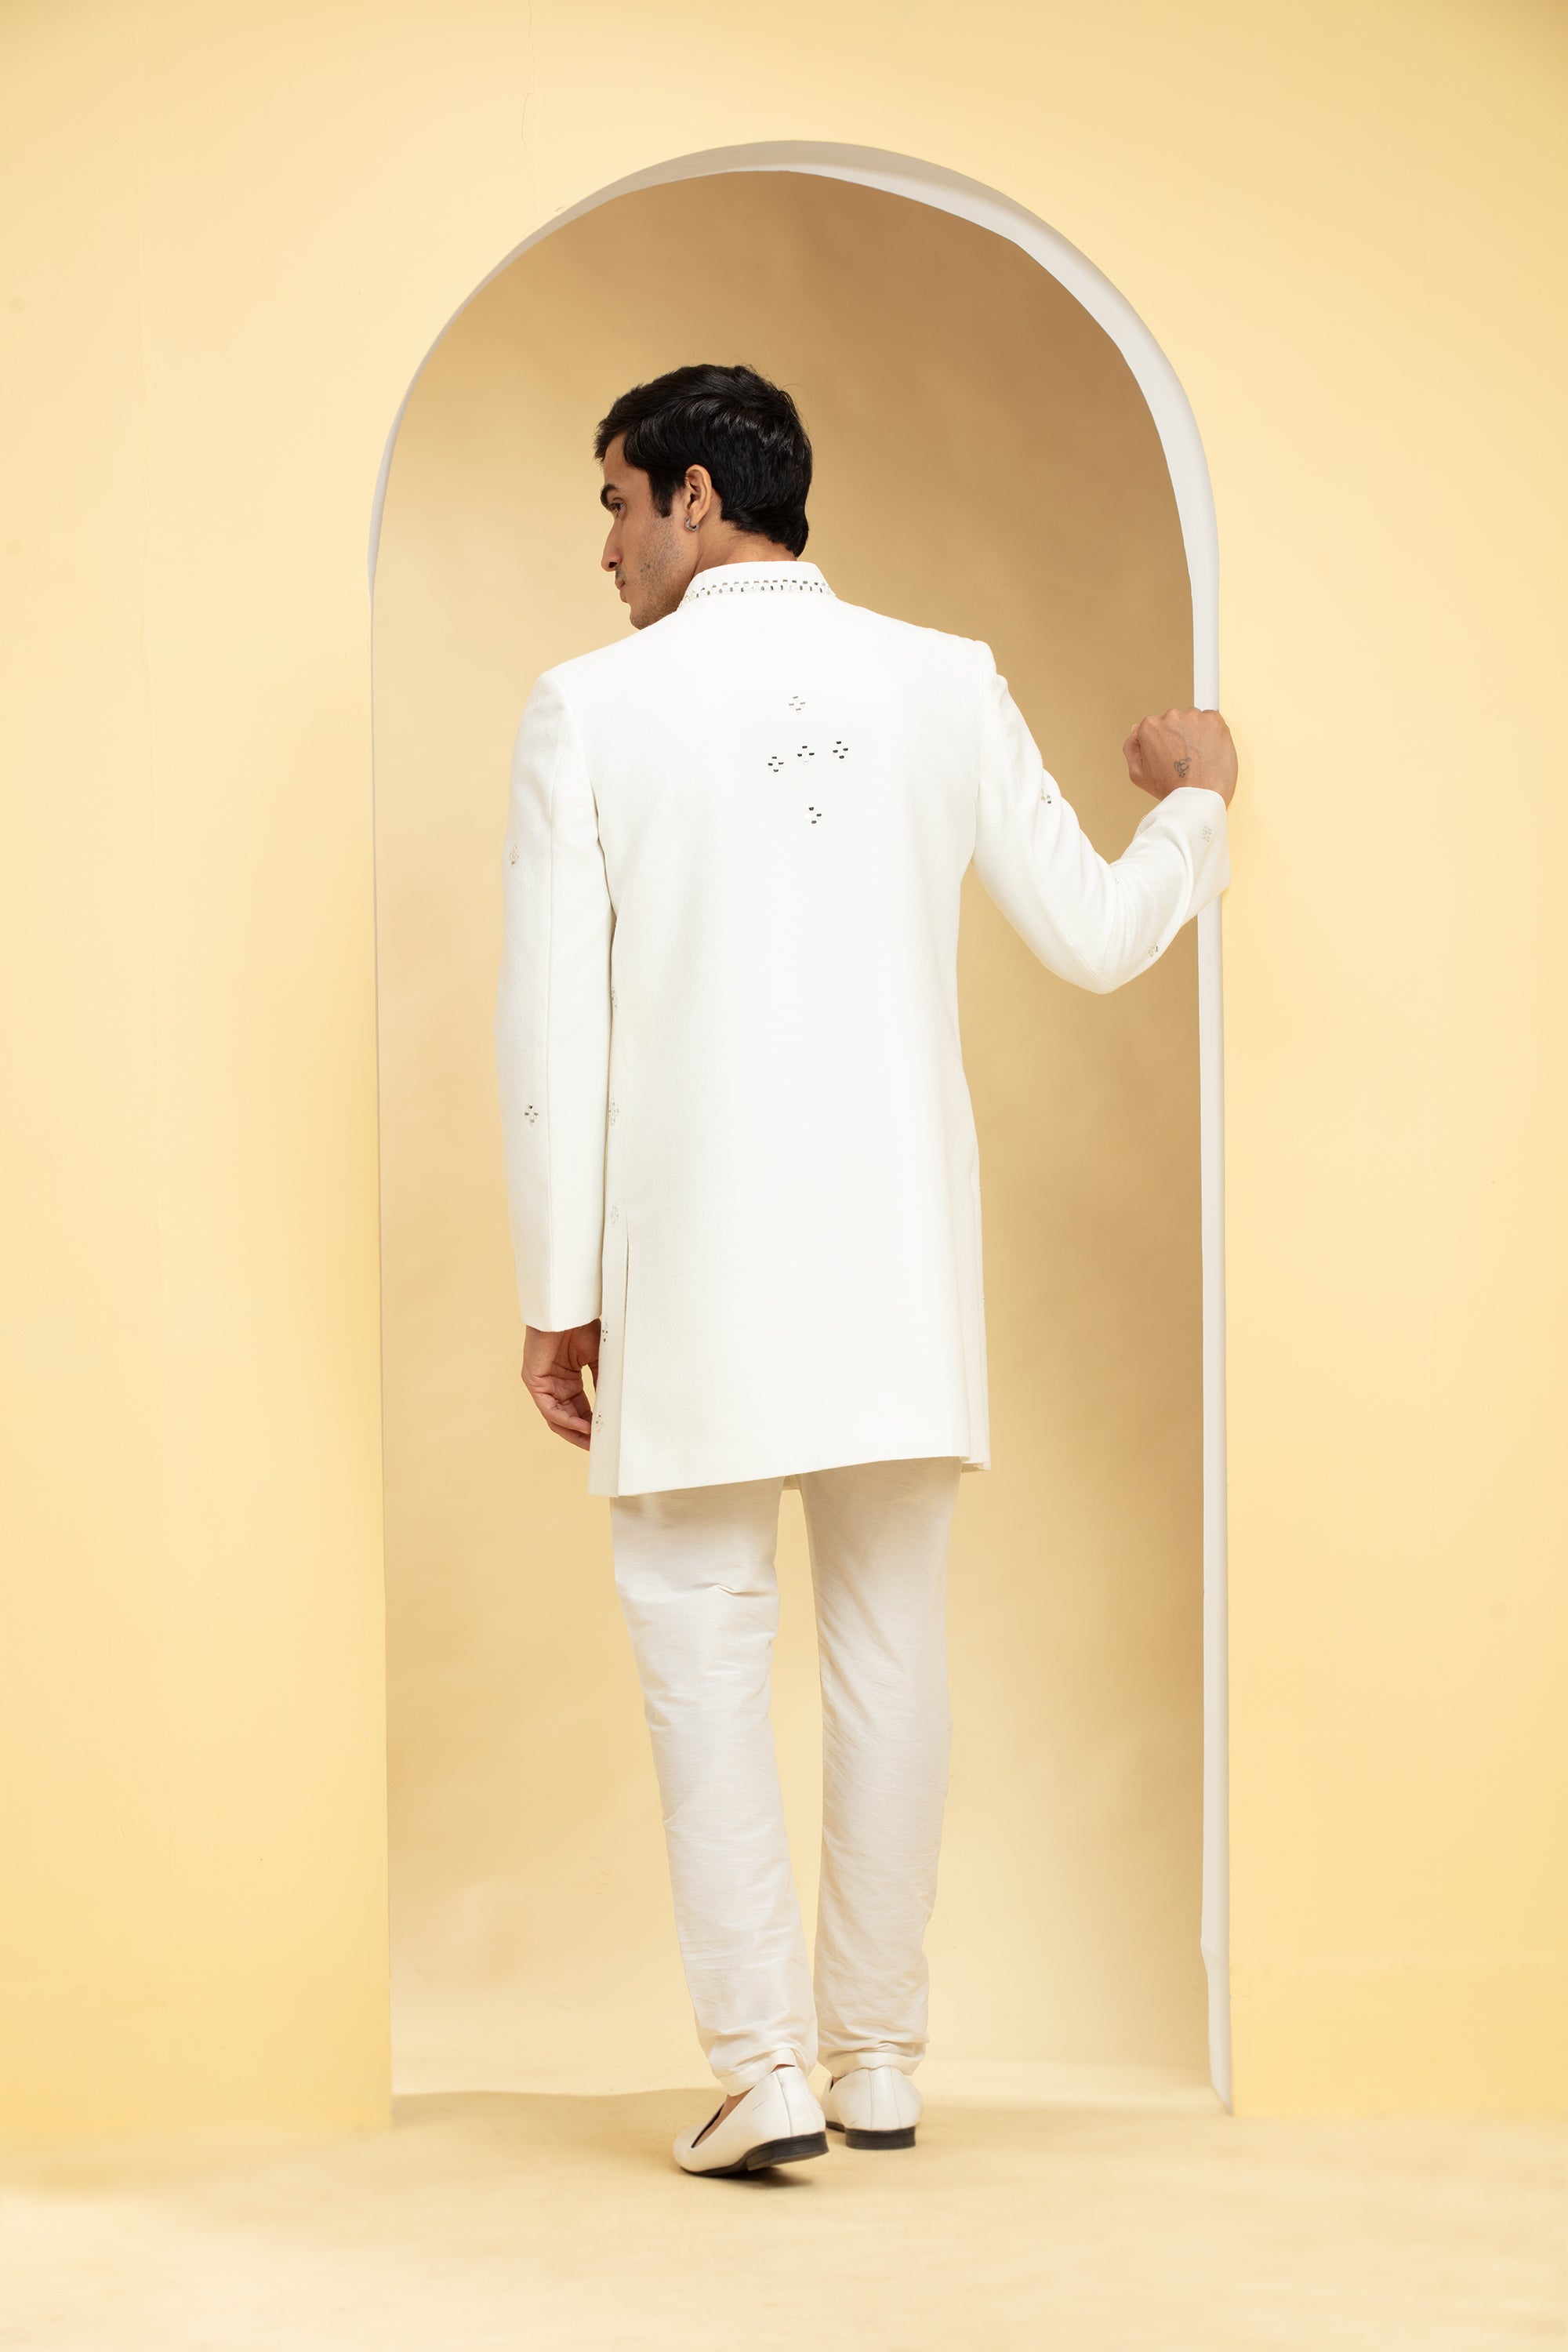 Buy Jodhpuri Suit Navy Blue Royal Evergreen Partywear Coat Pant Safari  Sherwani for Men Designer Coat Pant Jacket Blazer With Matching Pant Online  in India - Etsy